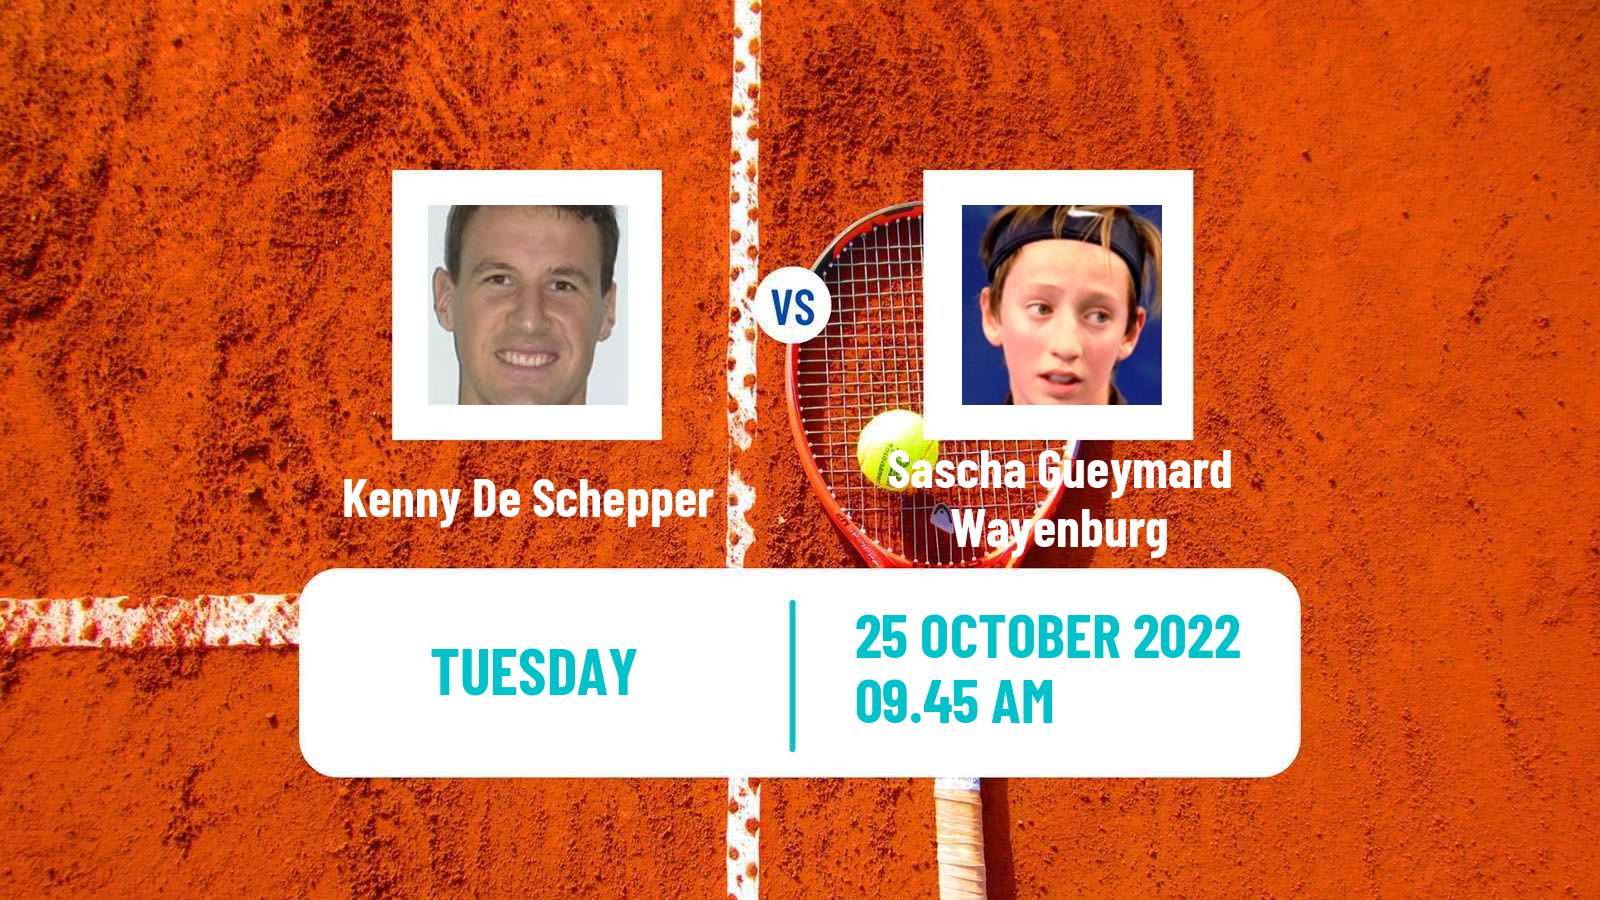 Tennis ATP Challenger Kenny De Schepper - Sascha Gueymard Wayenburg